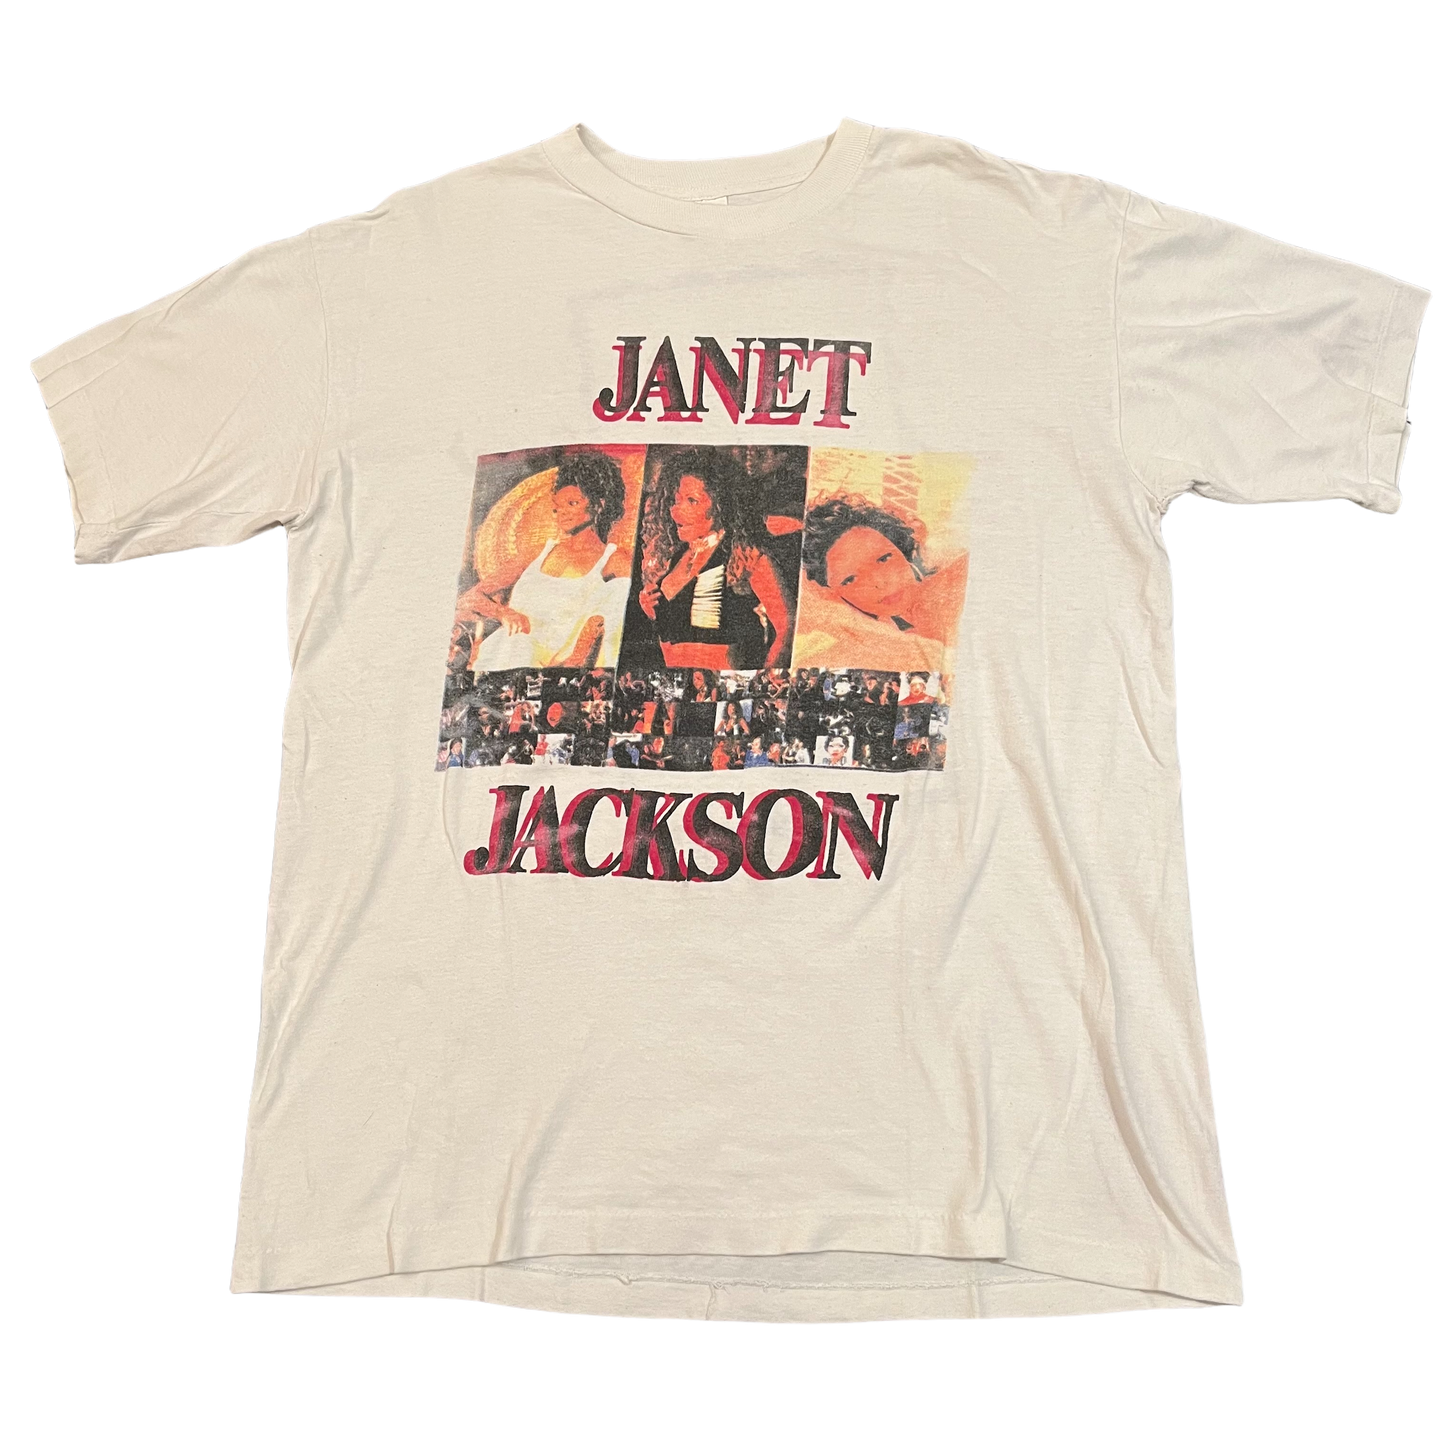 JANET JACKSON「TOUR 94」XL